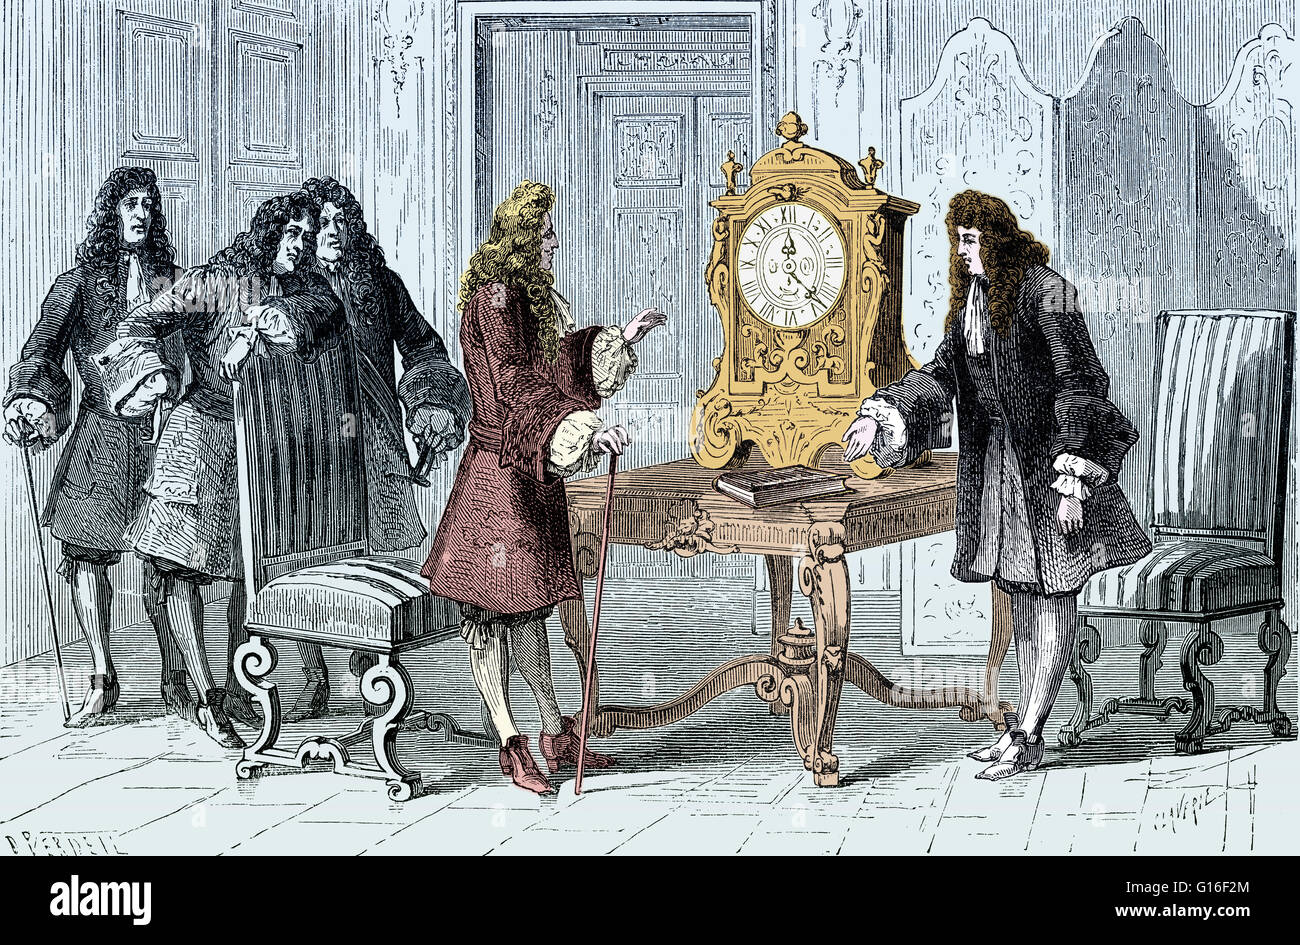 Huygens präsentiert seine Pendeluhr Louis XIV. Christiaan Huygens (14. April 1629 - 8. Juli 1695) war ein prominenter niederländischer Mathematiker, Astronom, Physiker, Probabilist, Uhrmacherei und Wissenschaftler. Huygens ist vor allem für seine Wellentheorie der Erinnerung. Stockfoto